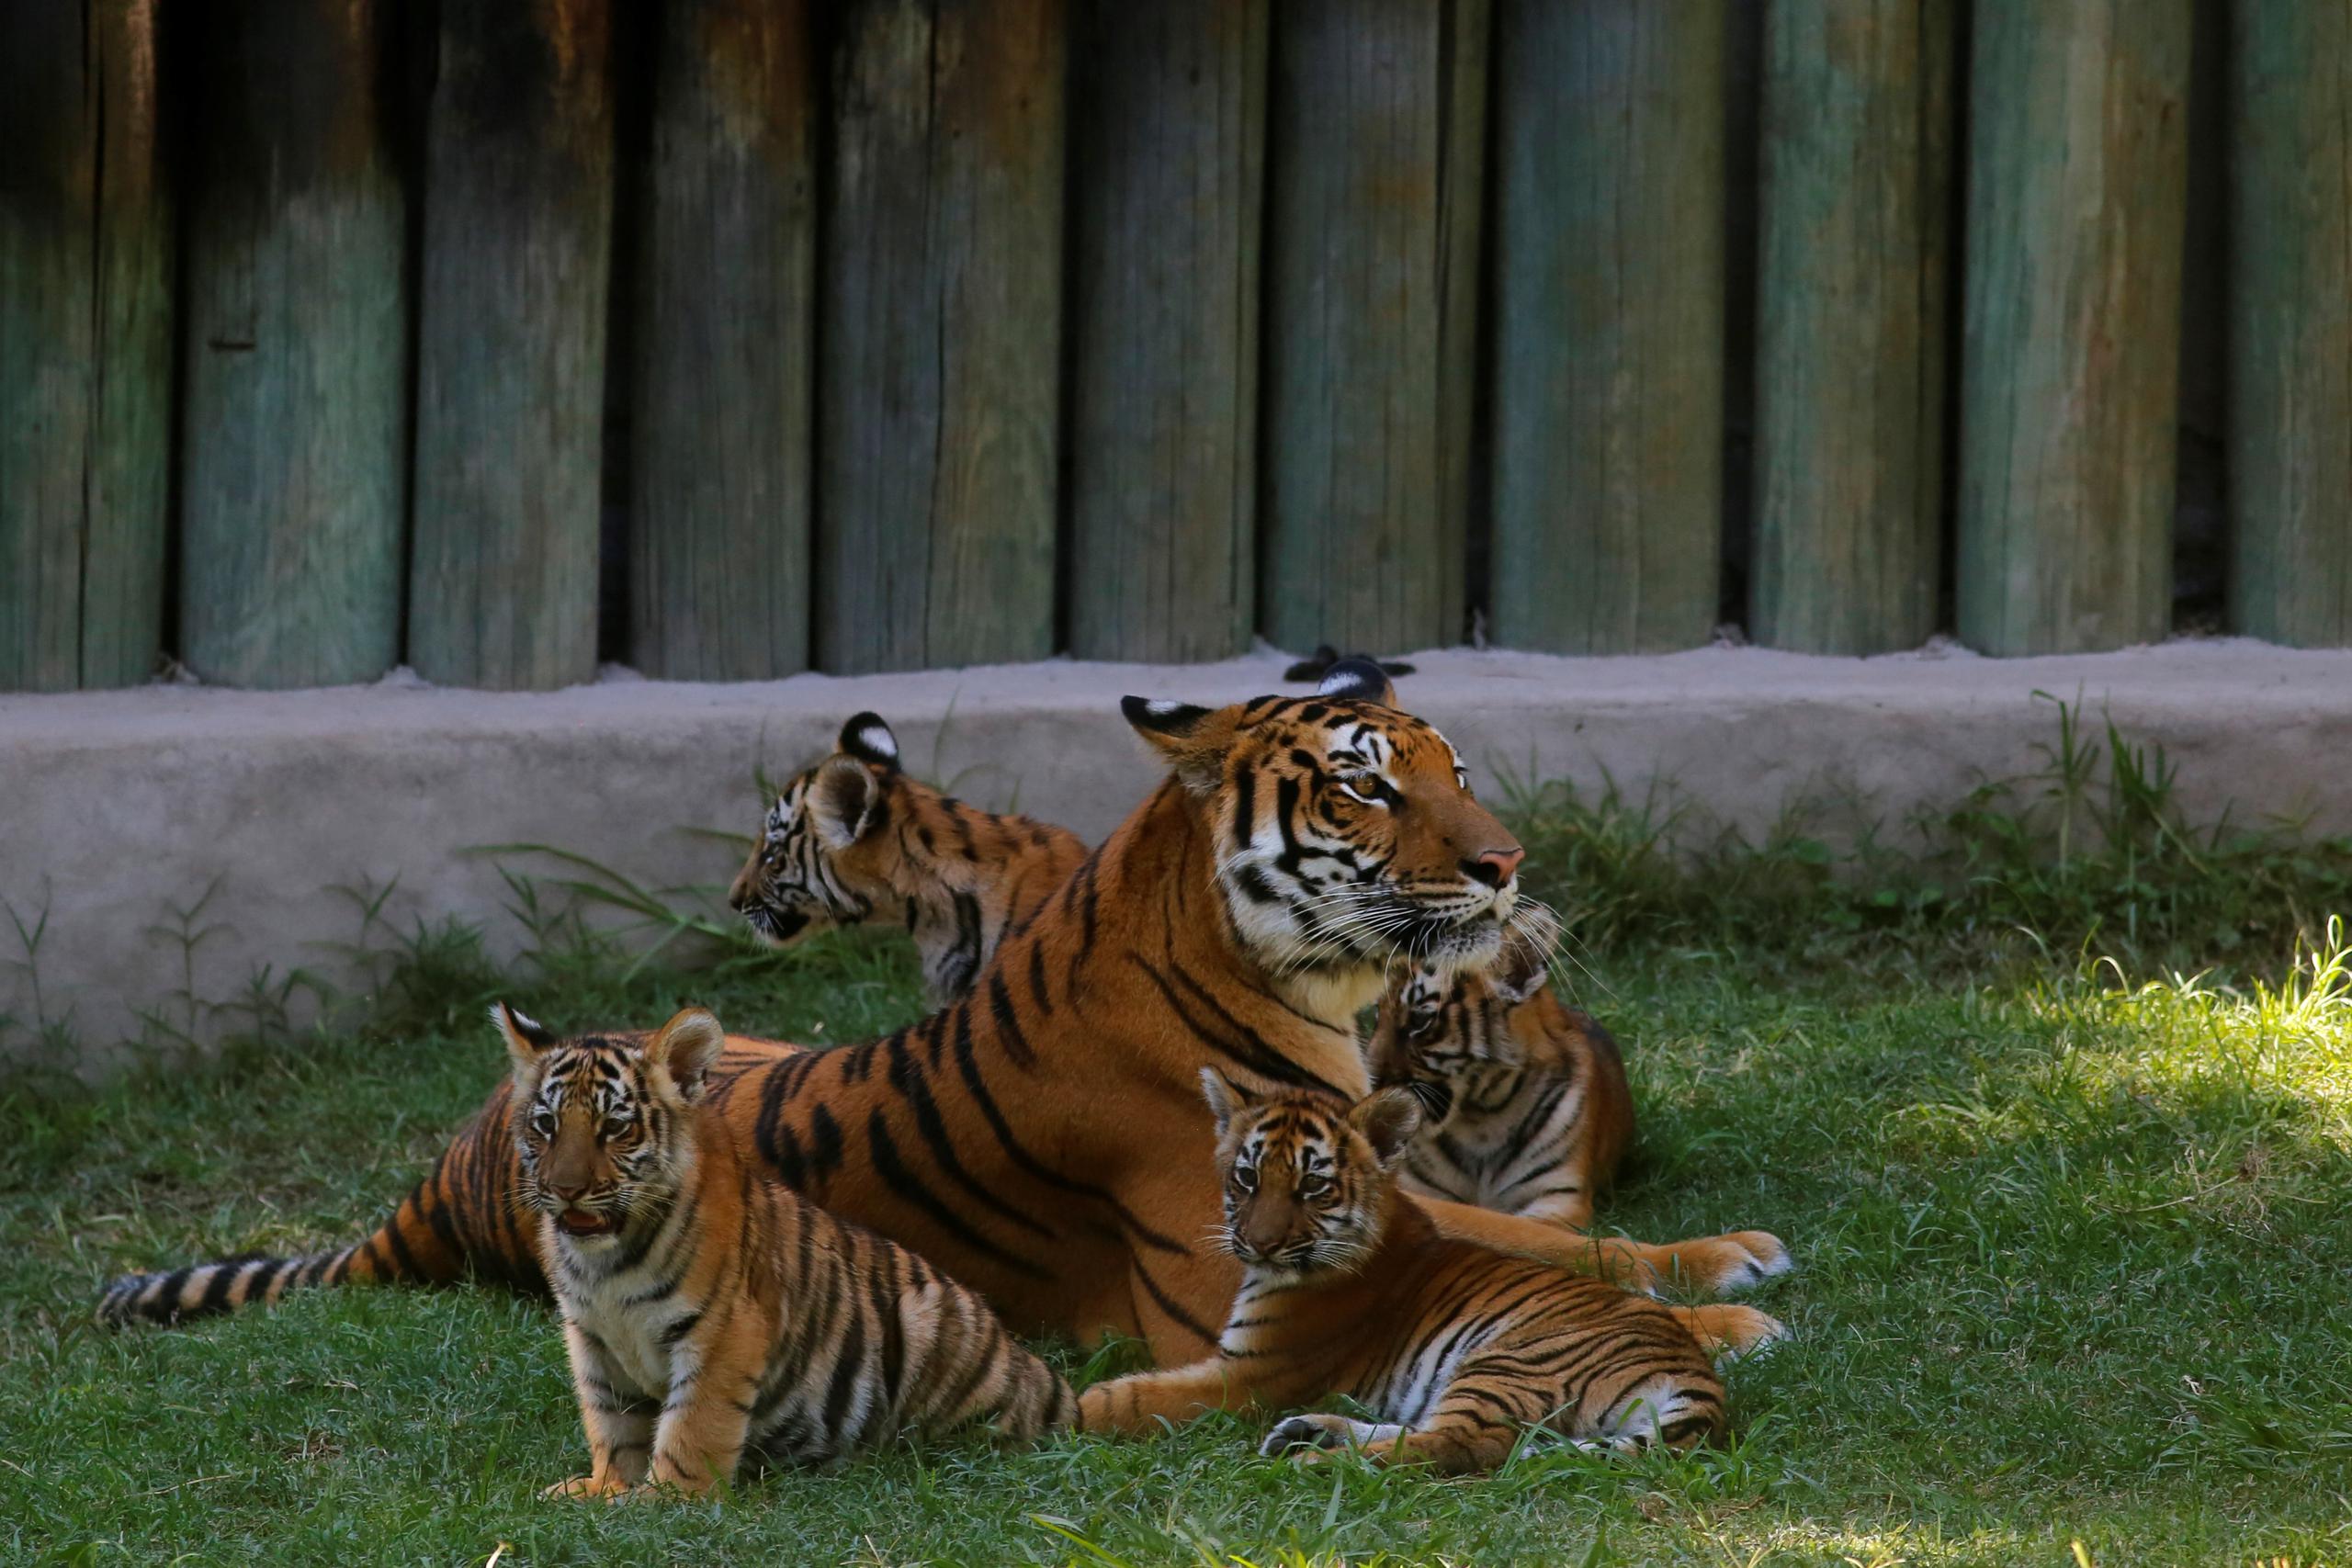 El tigre de bengala es una subespecie en peligro de extinción debido a la cacería y a la competencia cada vez más feroz para mantenerse en su hábitat que principalmente son los bosques templados de Asia.